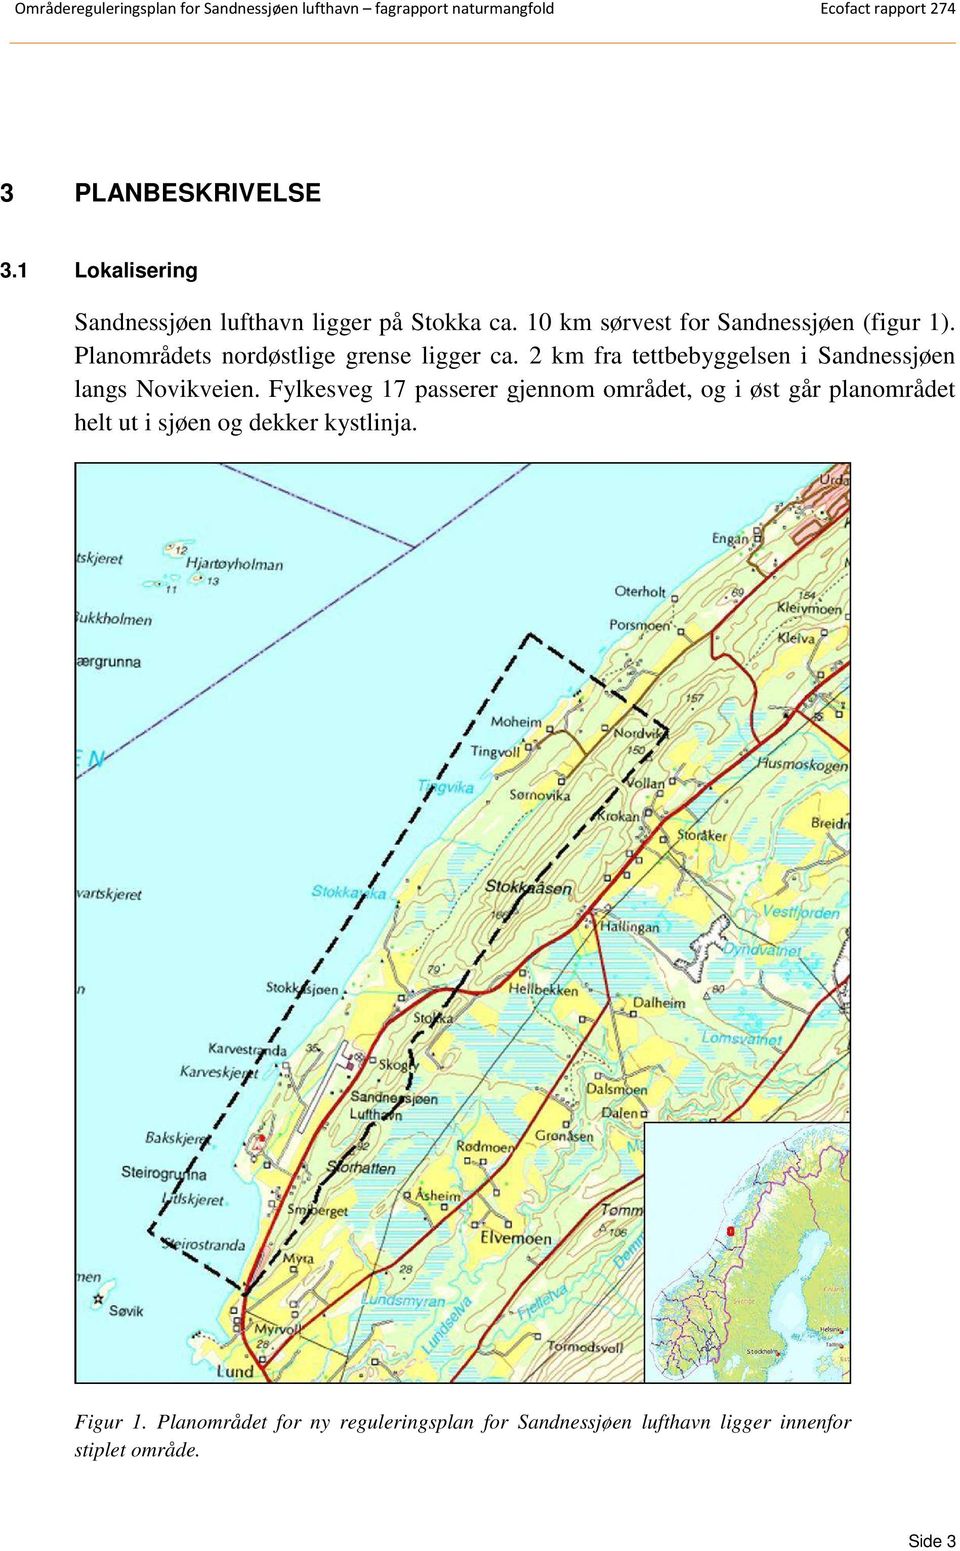 2 km fra tettbebyggelsen i Sandnessjøen langs Novikveien.